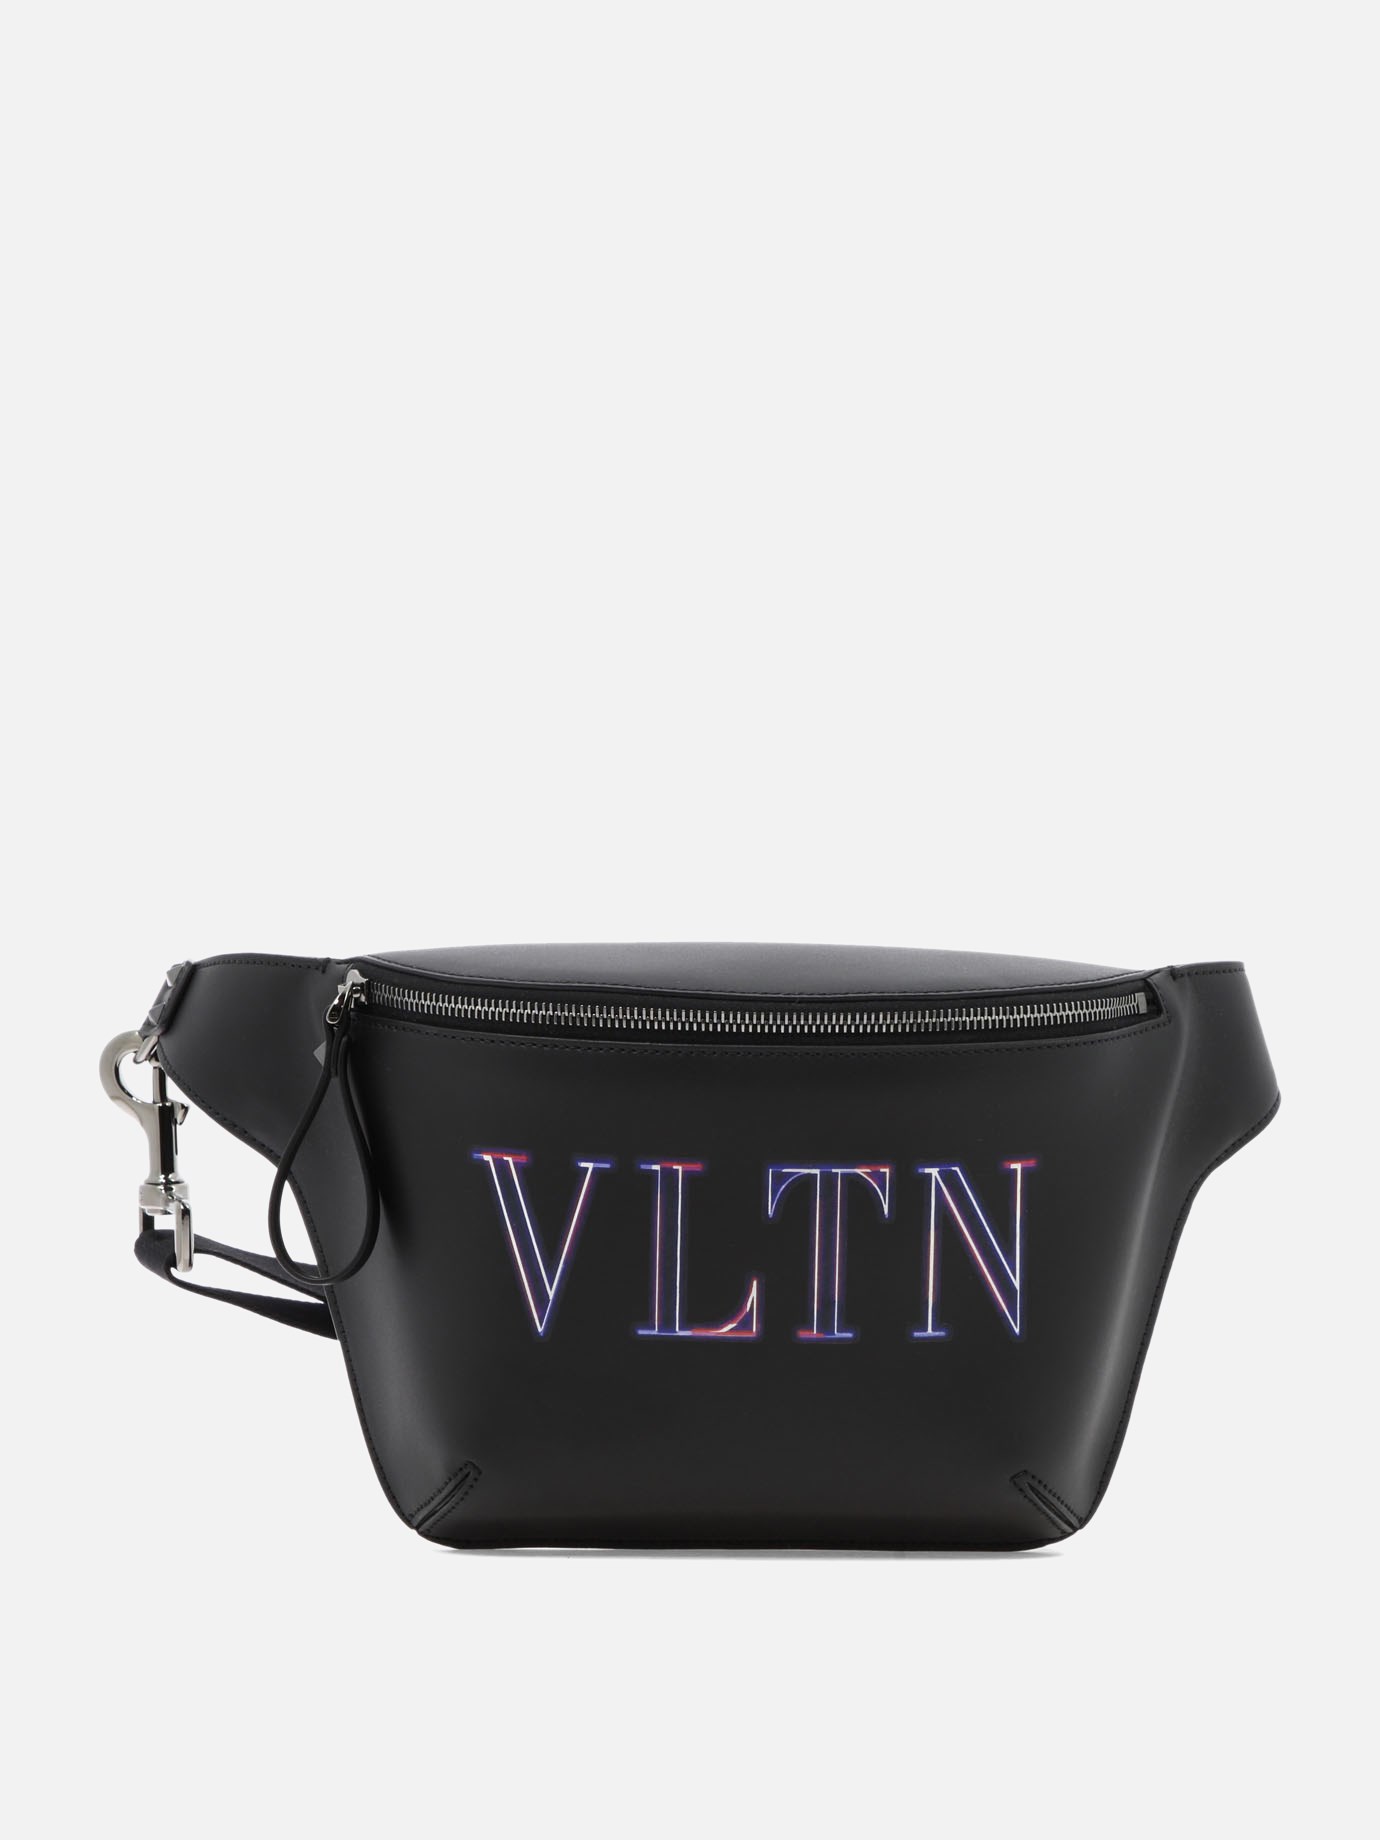  Neon VLTN  belt bagby Valentino Garavani - 0